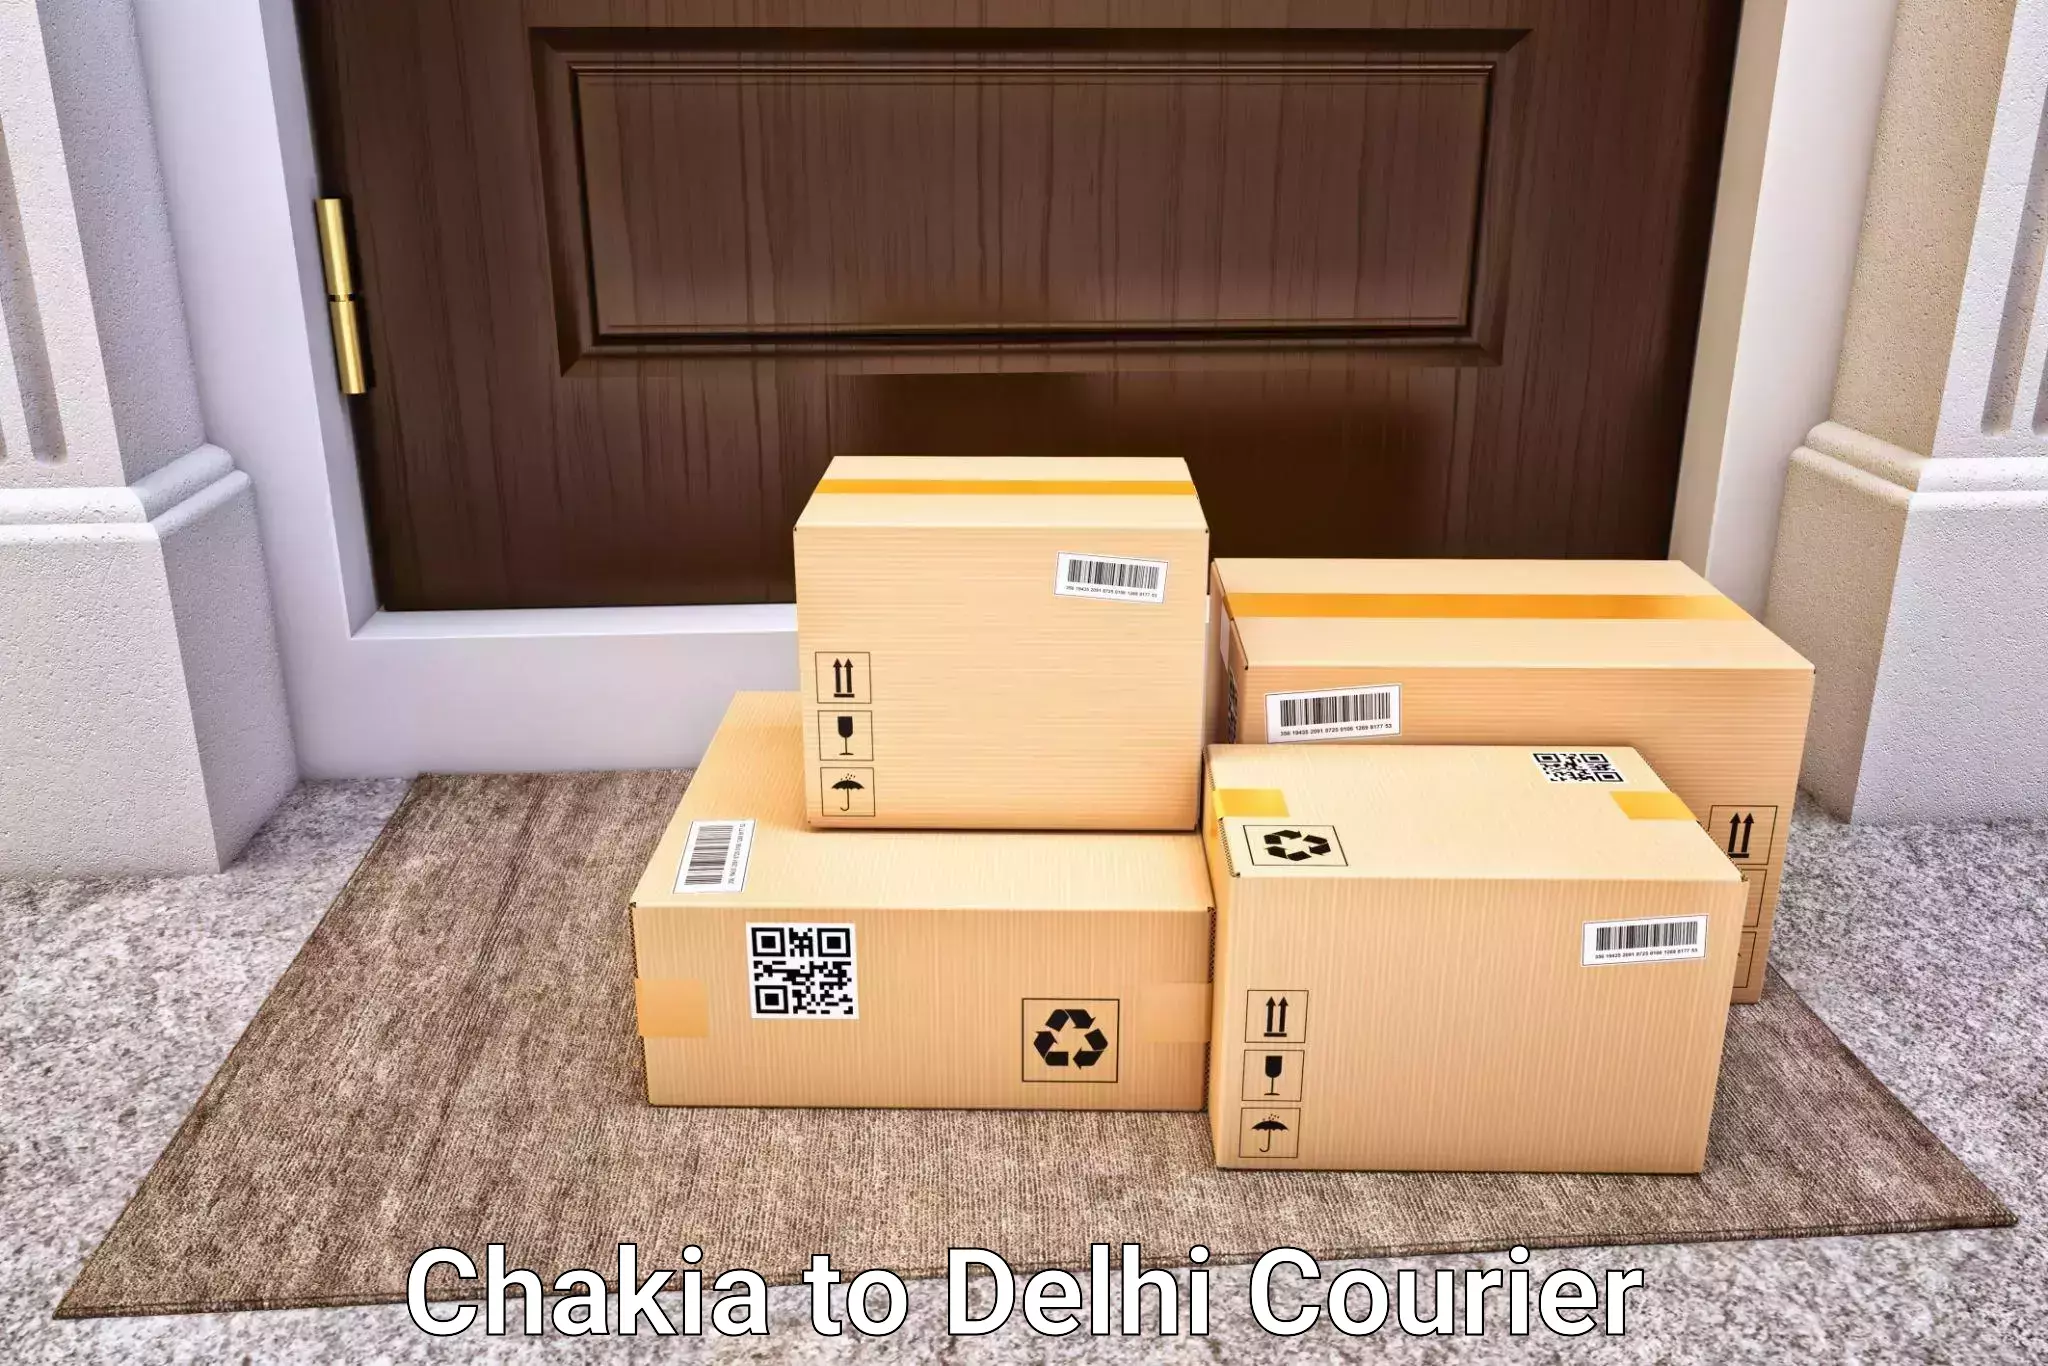 Door-to-door baggage service Chakia to Ashok Vihar